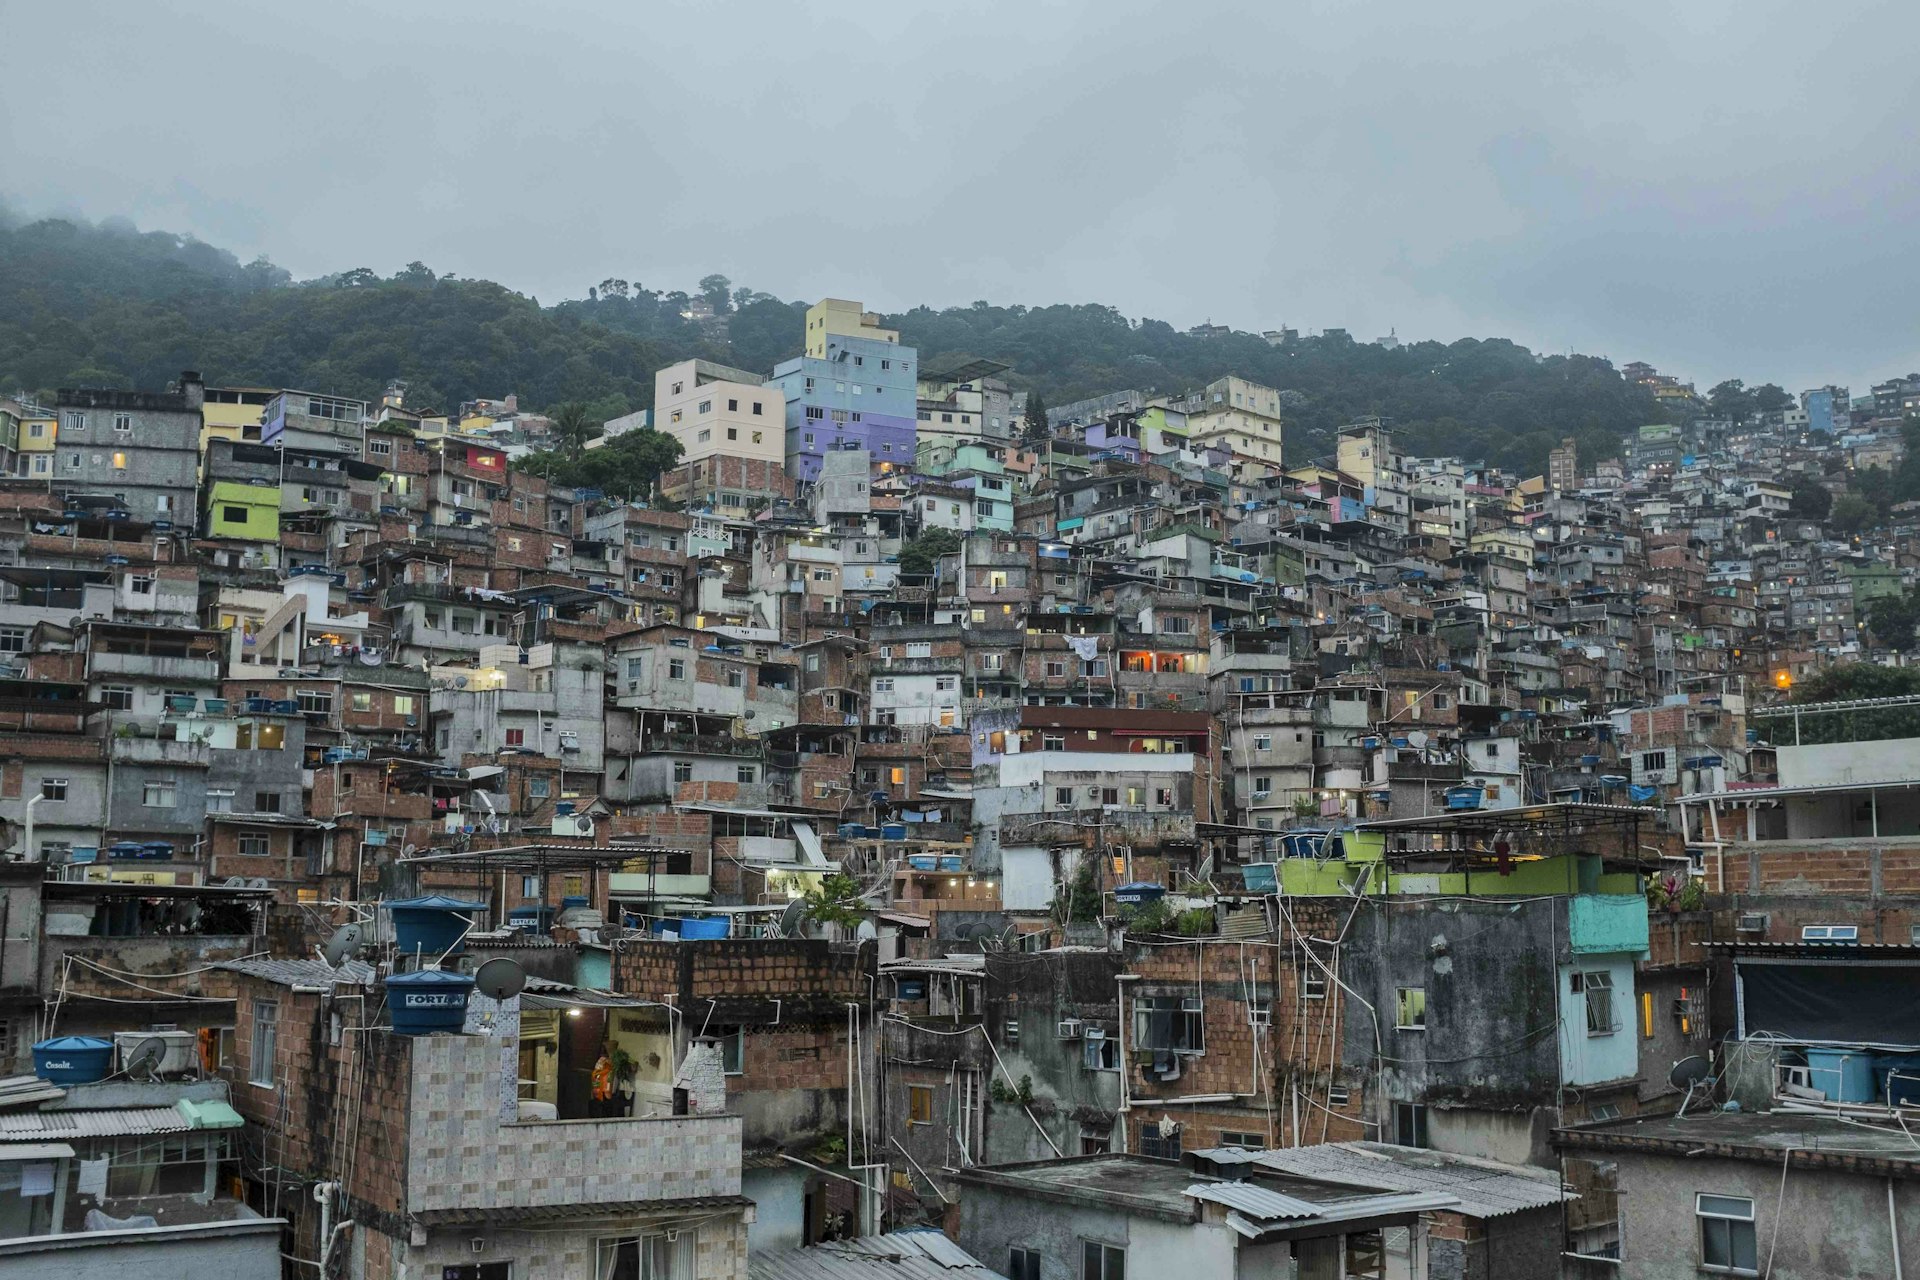 Rochinha favela, Rio de Janeiro. Top of page: Gabriel 'Popó' Oliveira looks out at the lineup at Cantão, São Conrado.